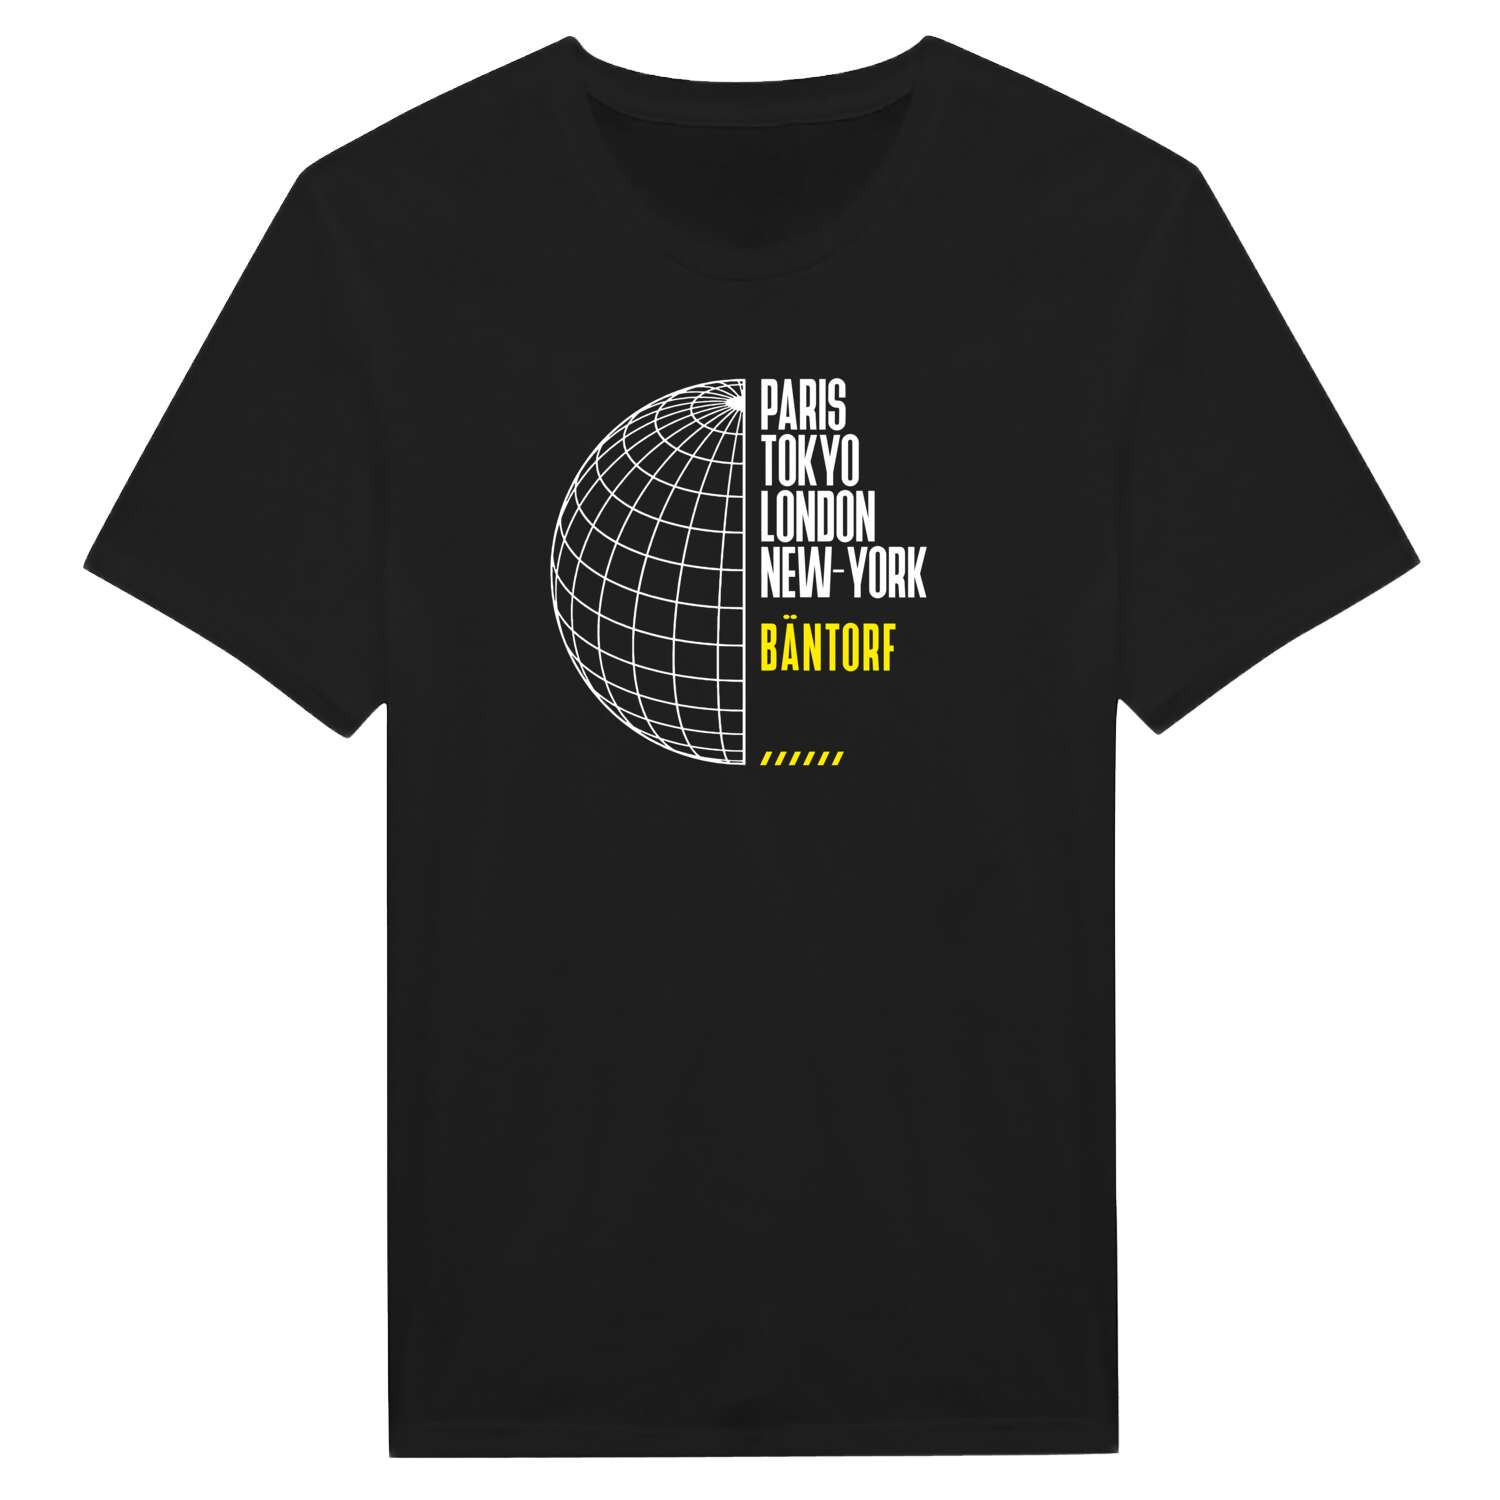 Bäntorf T-Shirt »Paris Tokyo London«